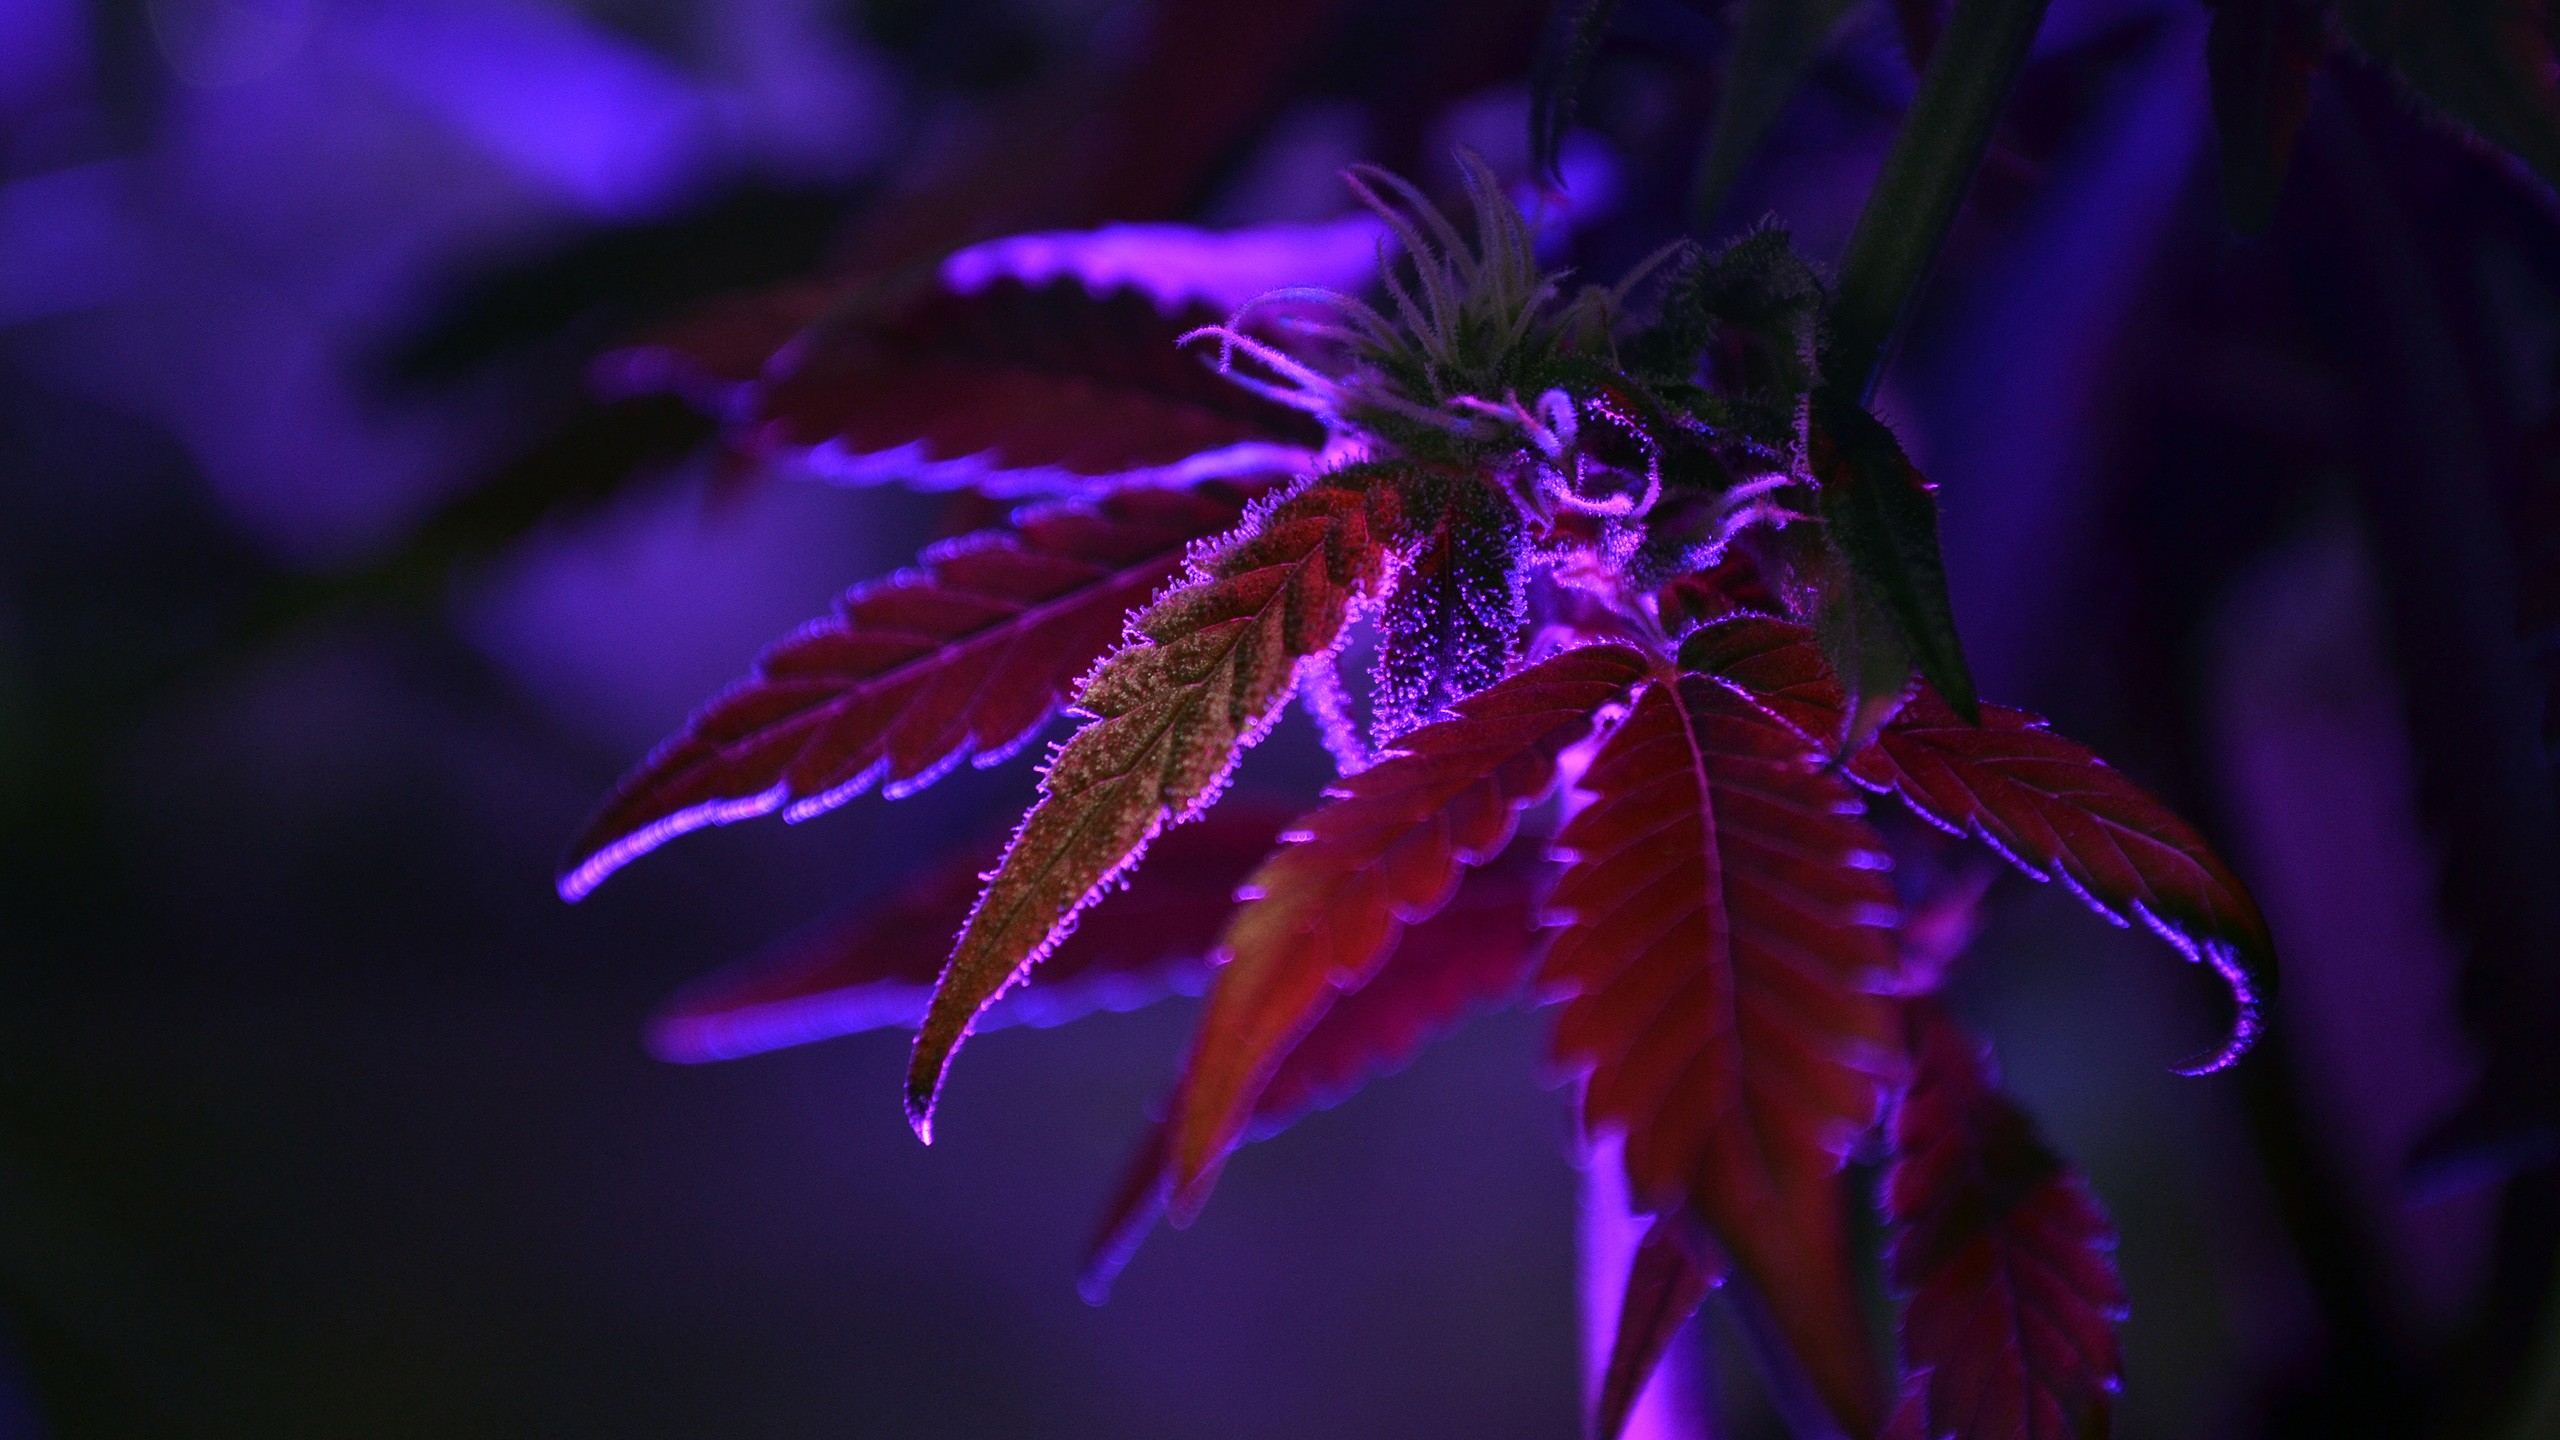 General 2560x1440 purple nature dark leaves macro depth of field cannabis